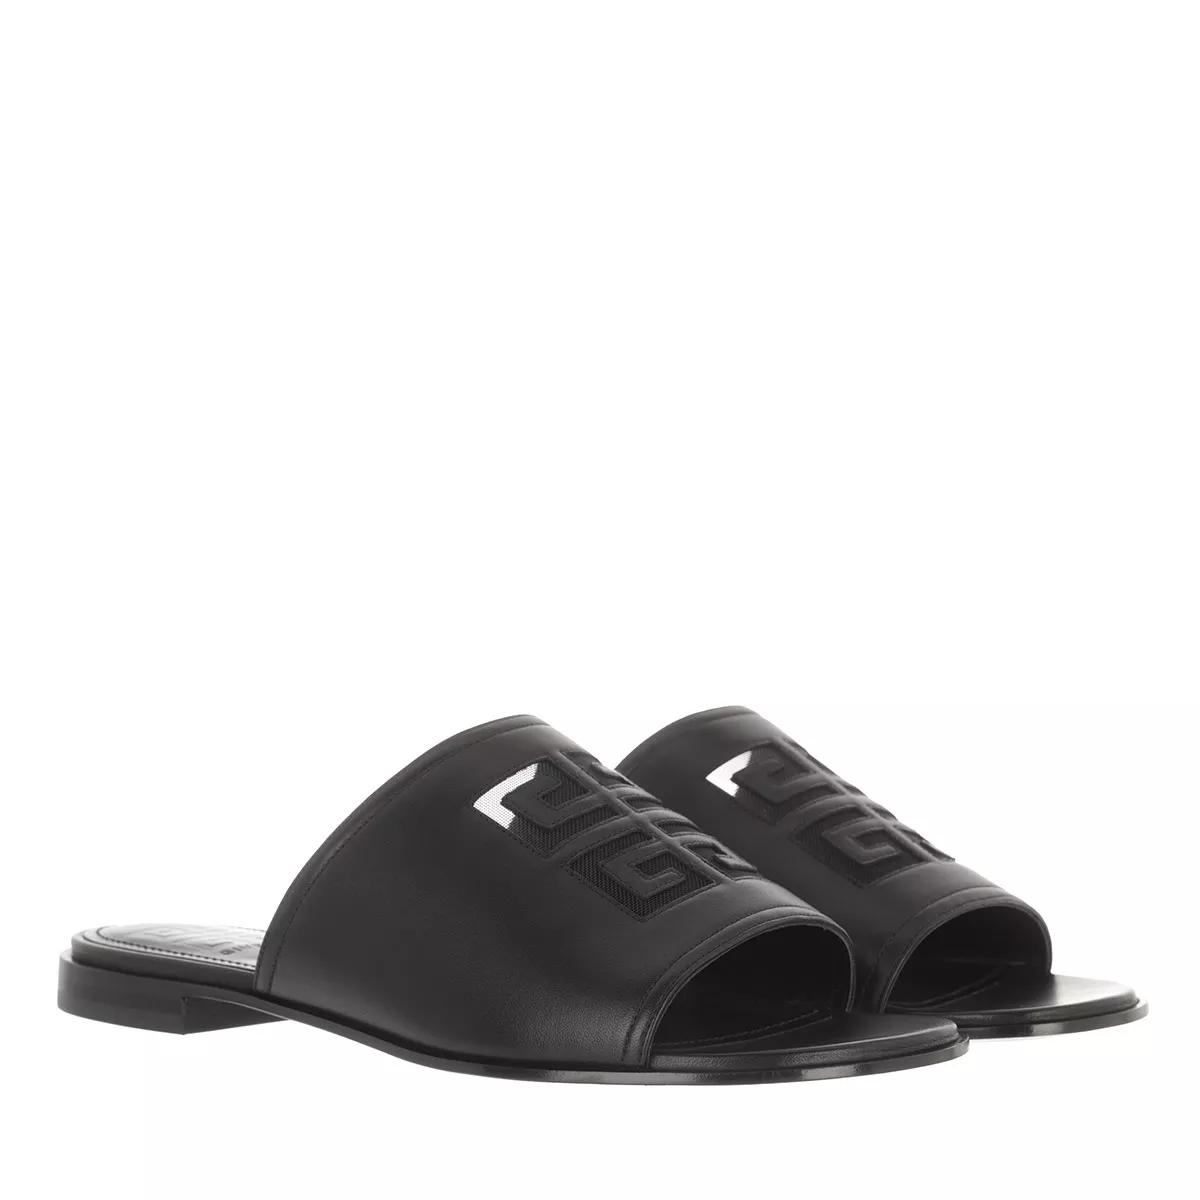 4G Flat Sandals Leather Black Slide